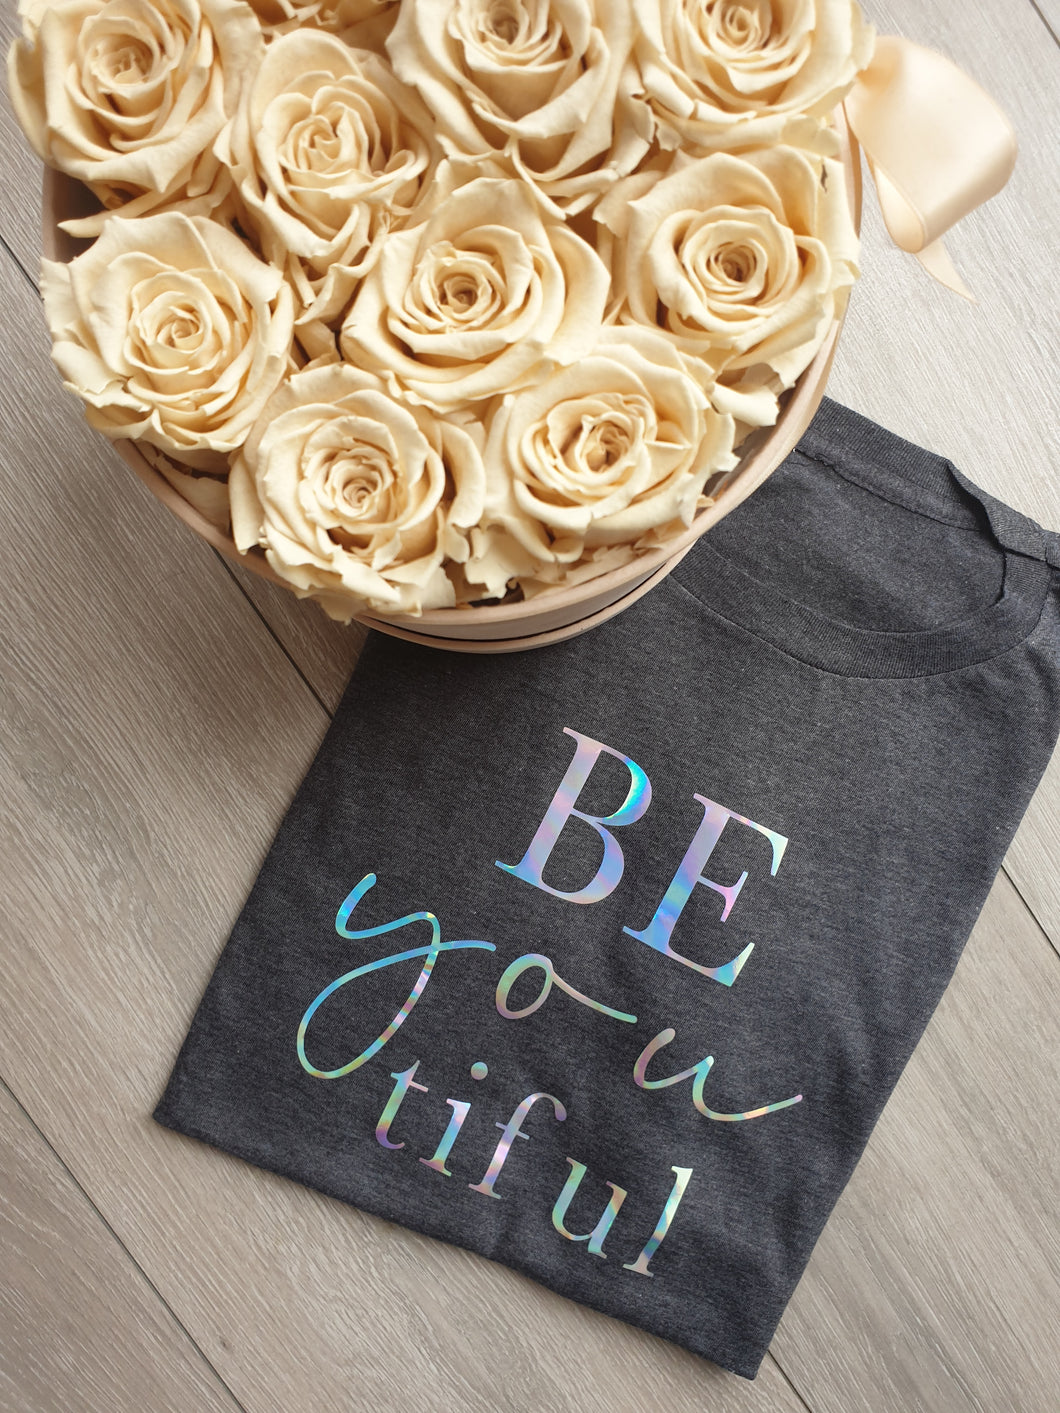 Be You Tiful Women's T-shirts